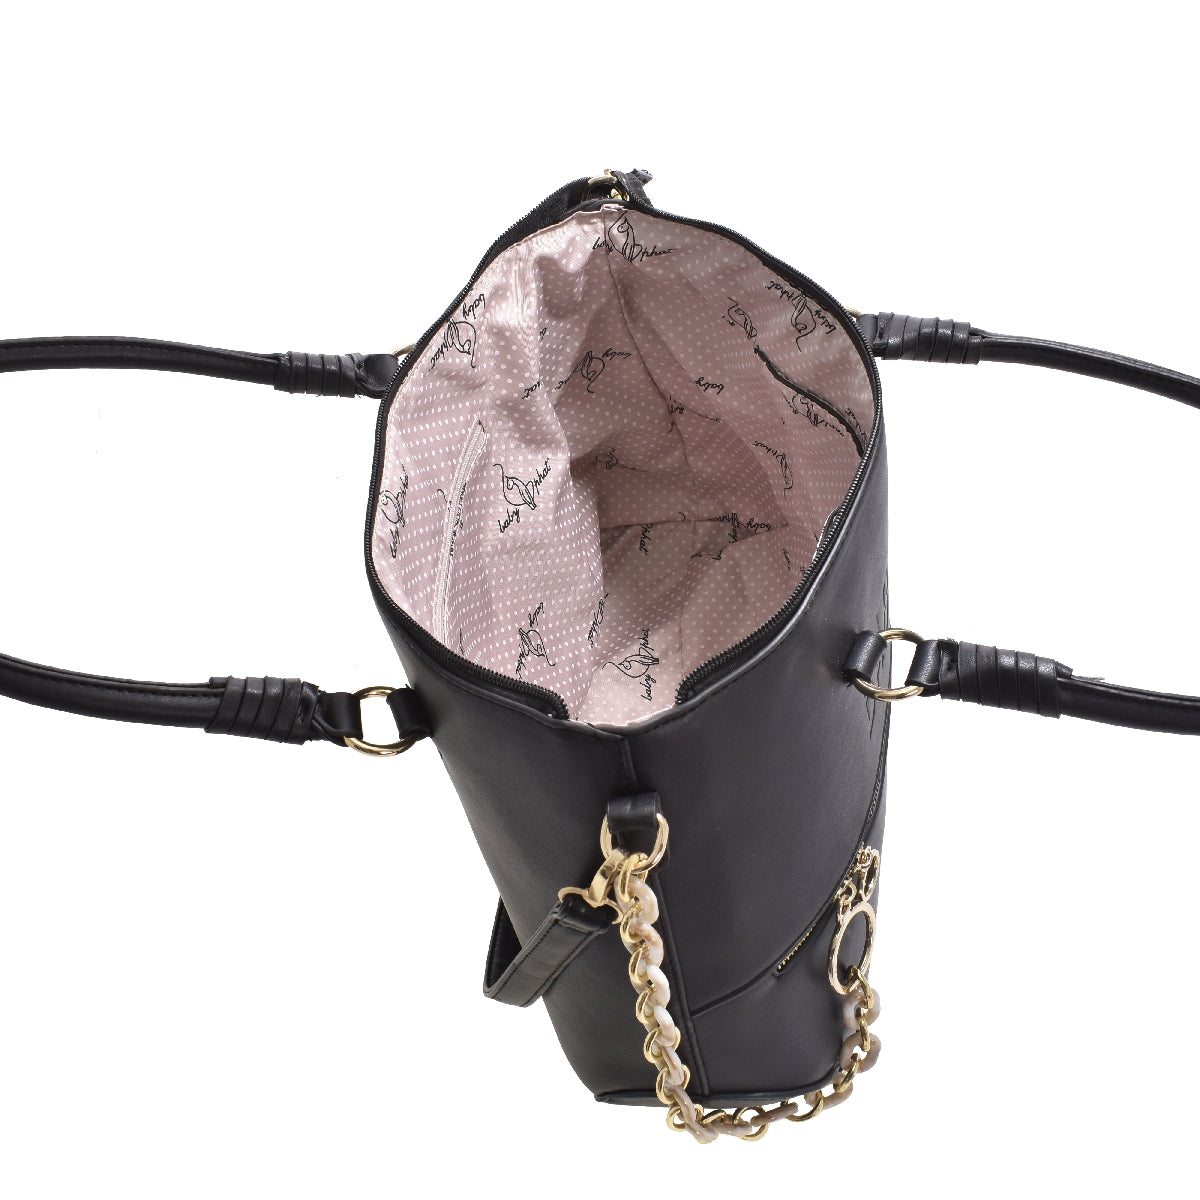 Bolsa [Baby Phat] tipo tote con diseño grabado, cadena y bolsa frontal color negro